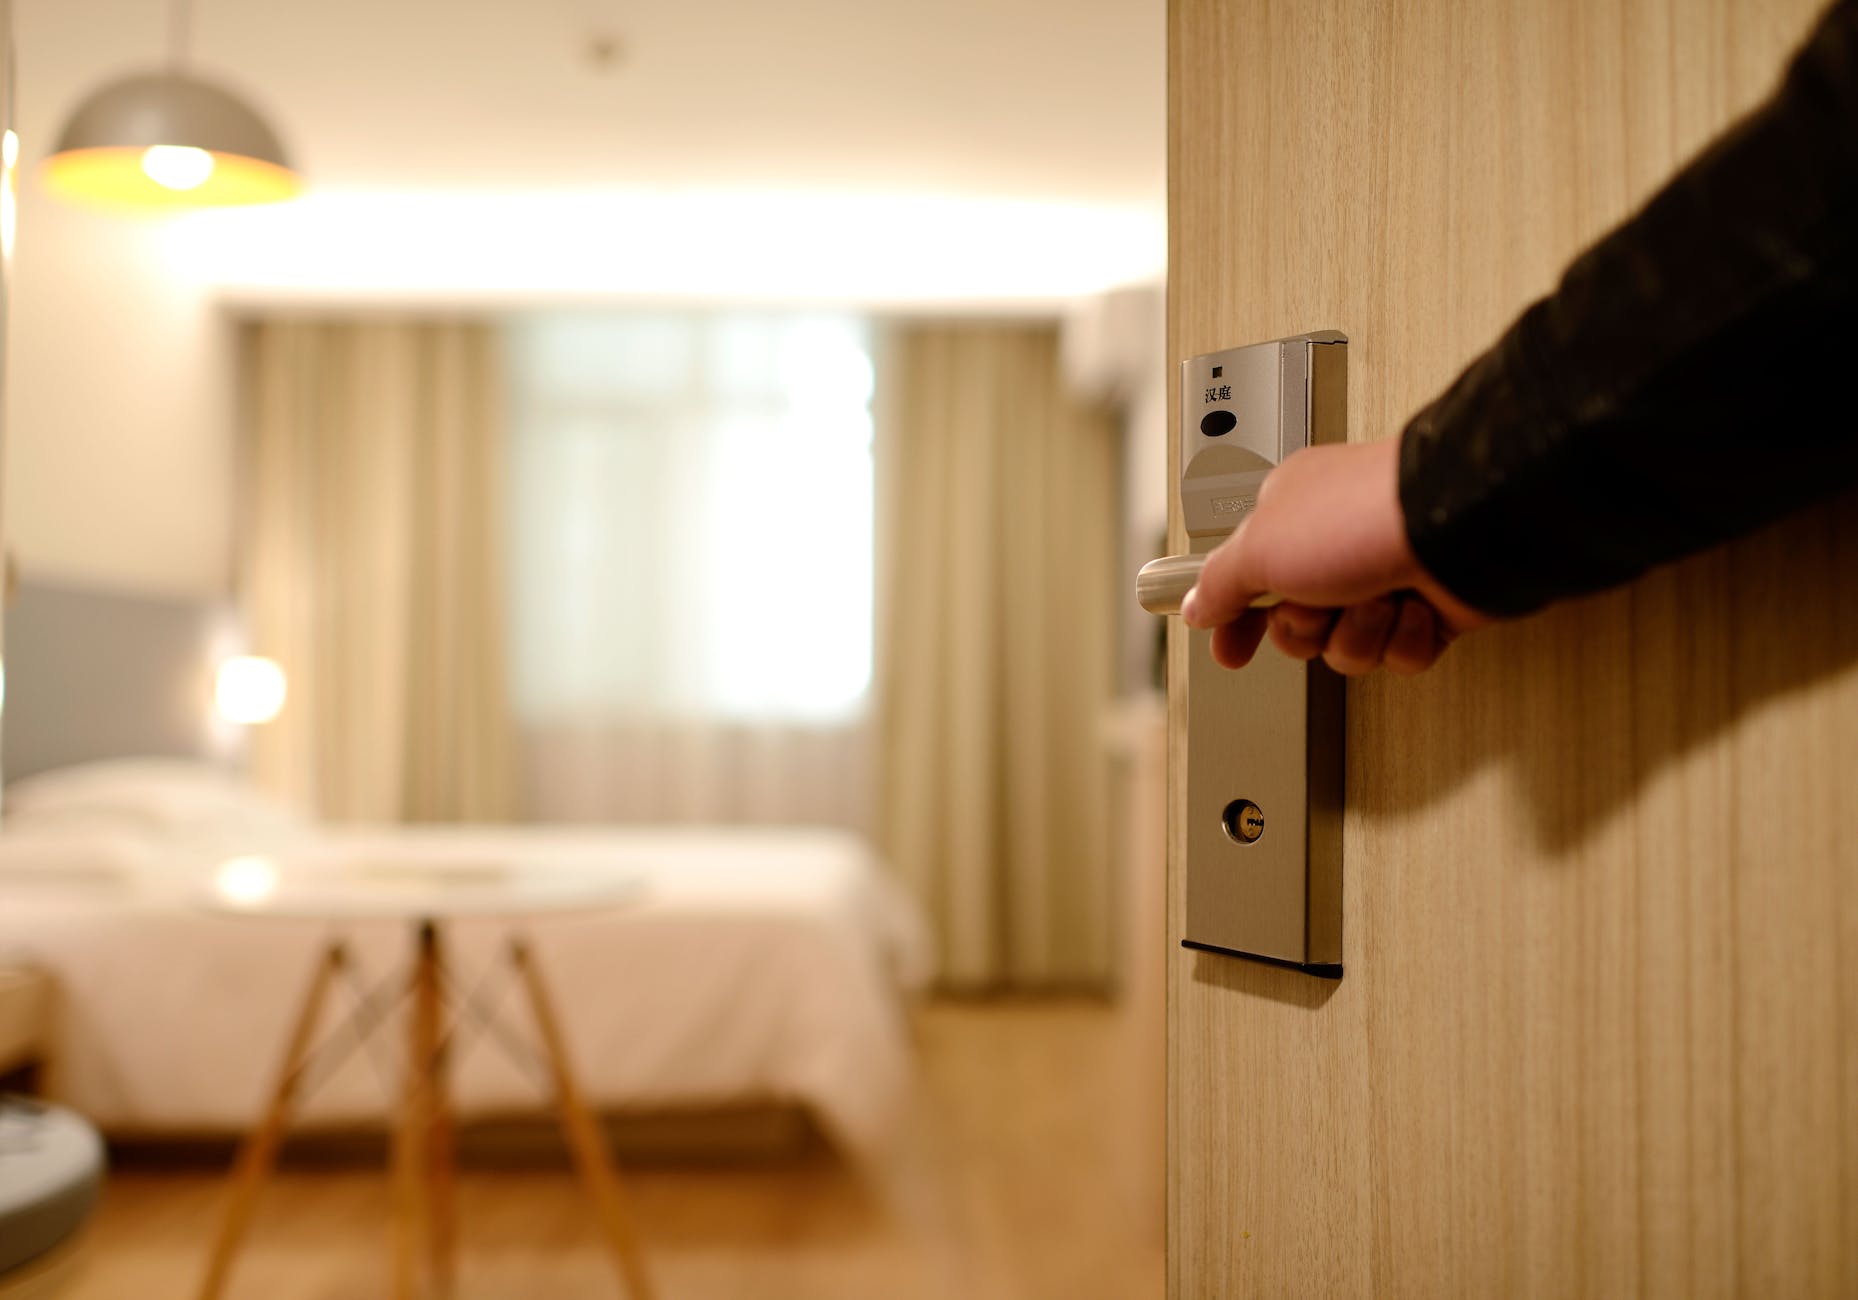 Bezettingsgraad van hotels in Nederland is 12% hoger dan in de rest van de wereld